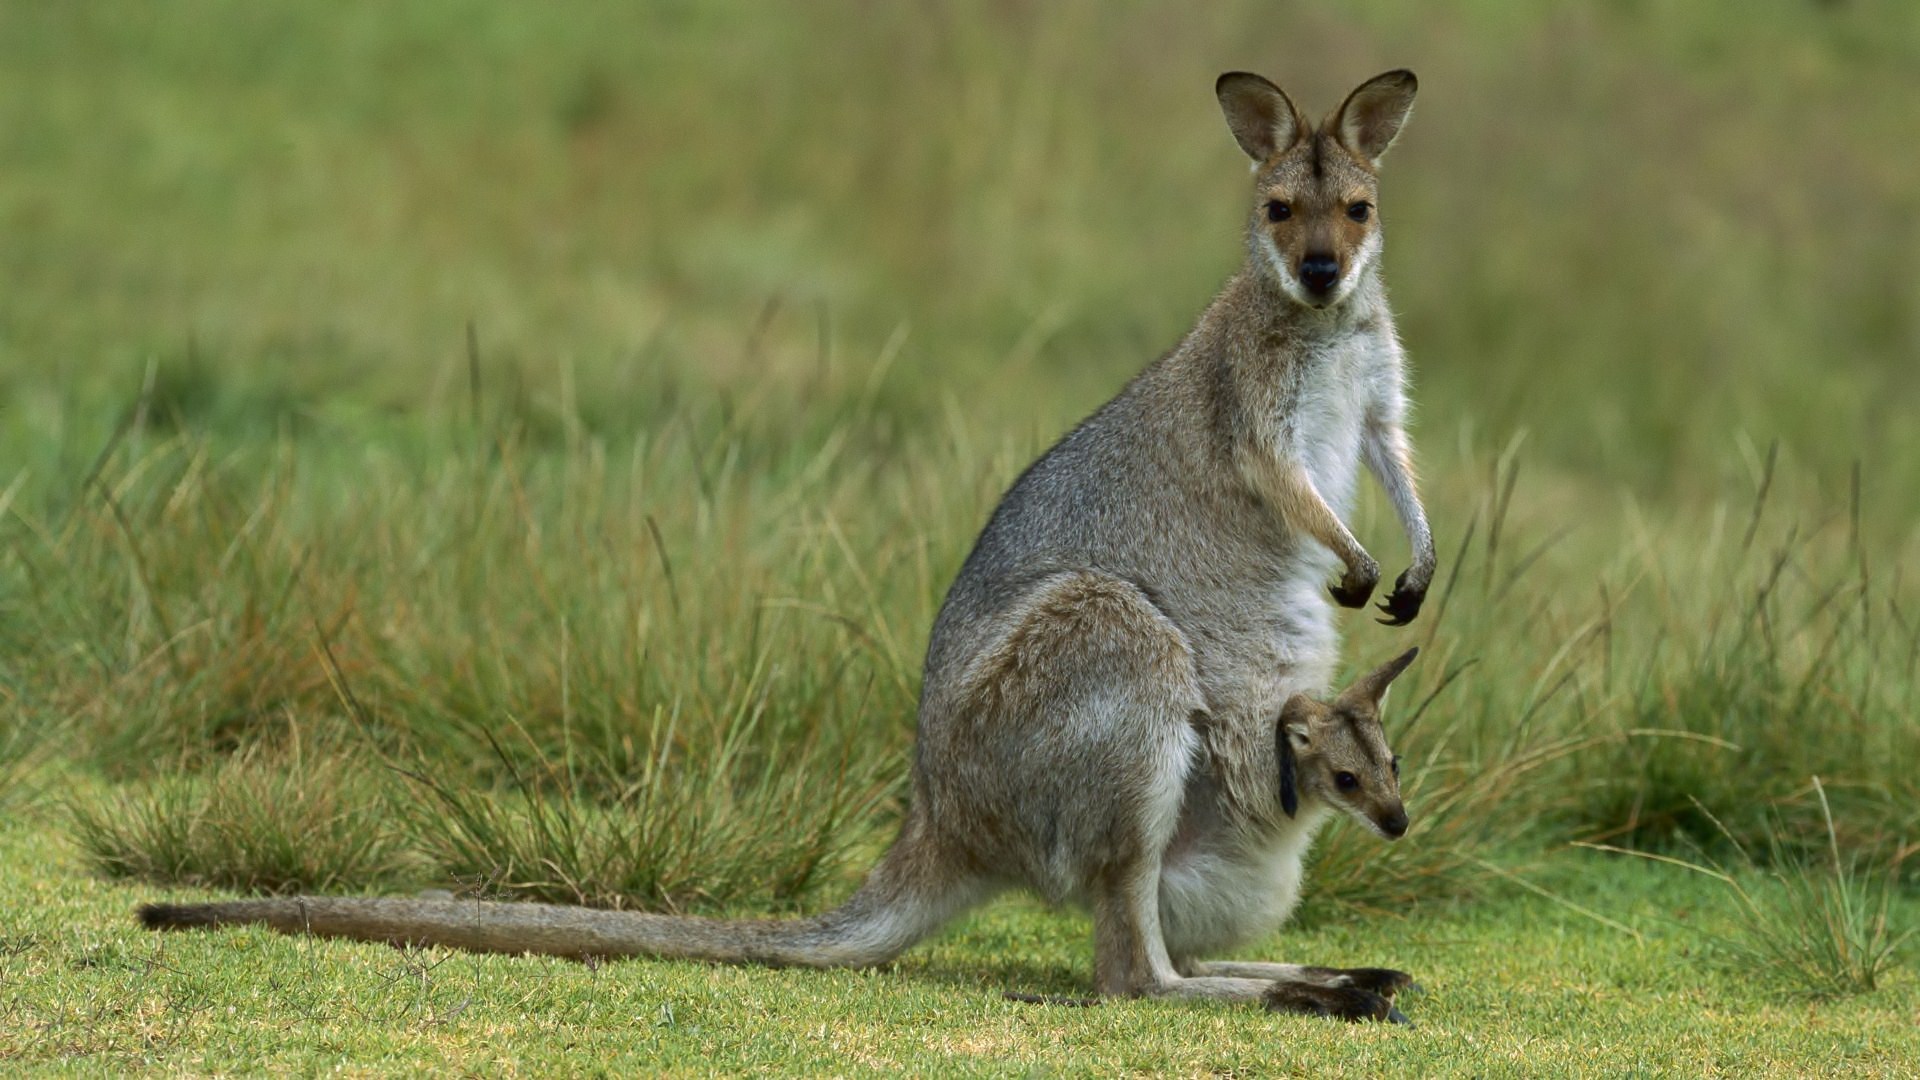 Download mobile wallpaper Nature, Kangaroo, Animal for free.